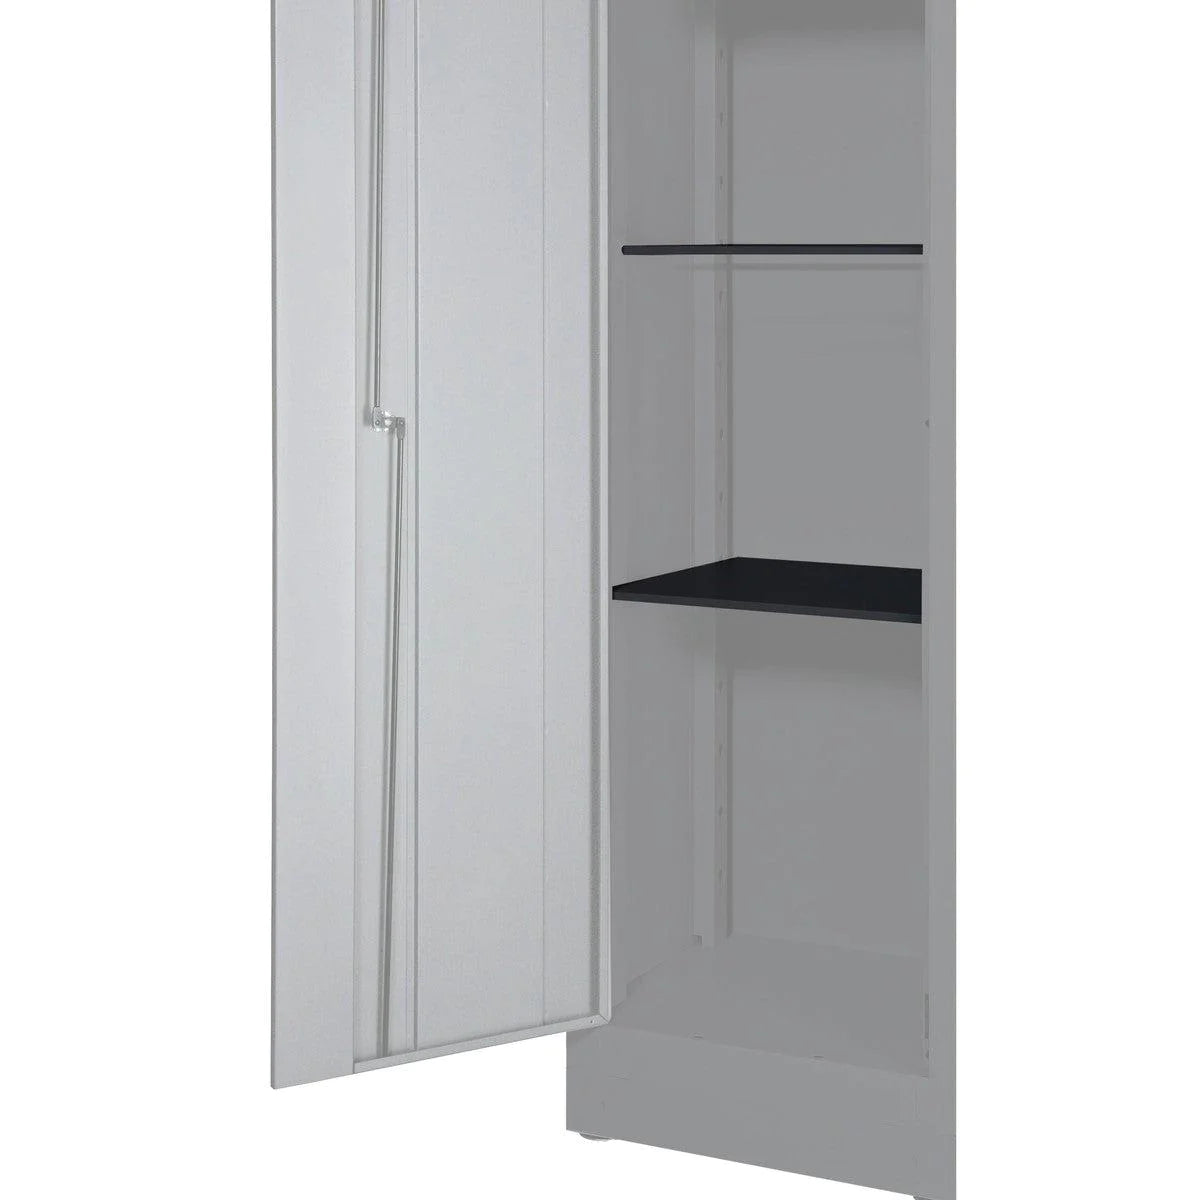 2 Shelves for Double Door 44" Cabinet MST44001DG2, Dark Grey